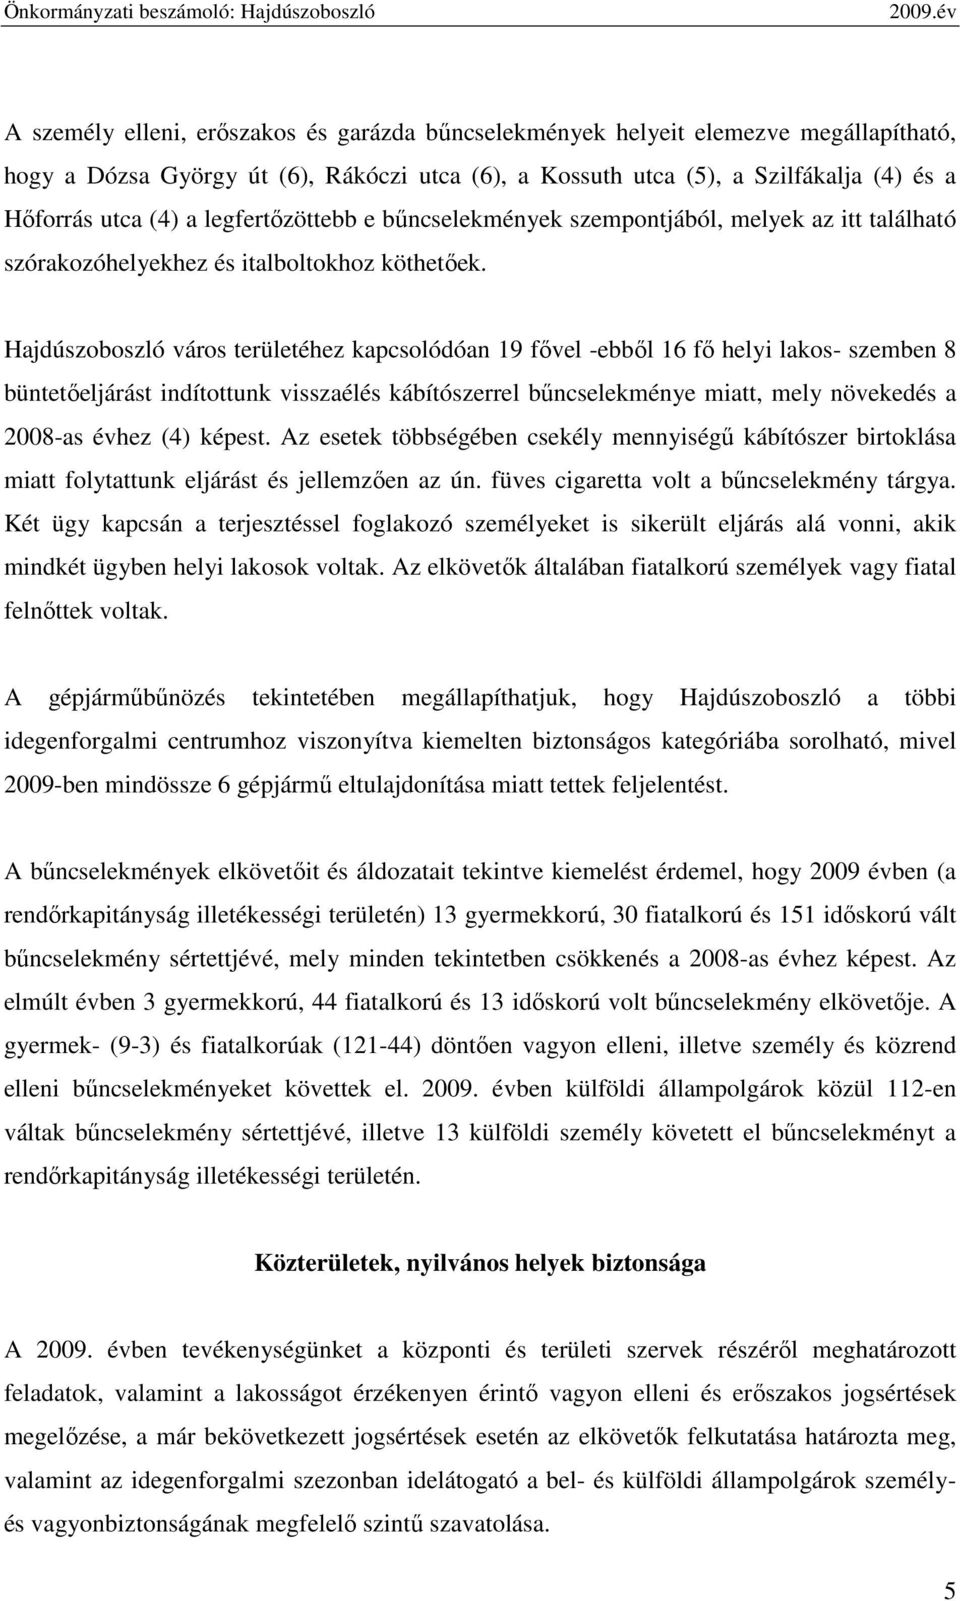 Hajdúszoboszló város területéhez kapcsolódóan 19 fıvel -ebbıl 16 fı helyi lakos- szemben 8 büntetıeljárást indítottunk visszaélés kábítószerrel bőncselekménye miatt, mely növekedés a 2008-as évhez